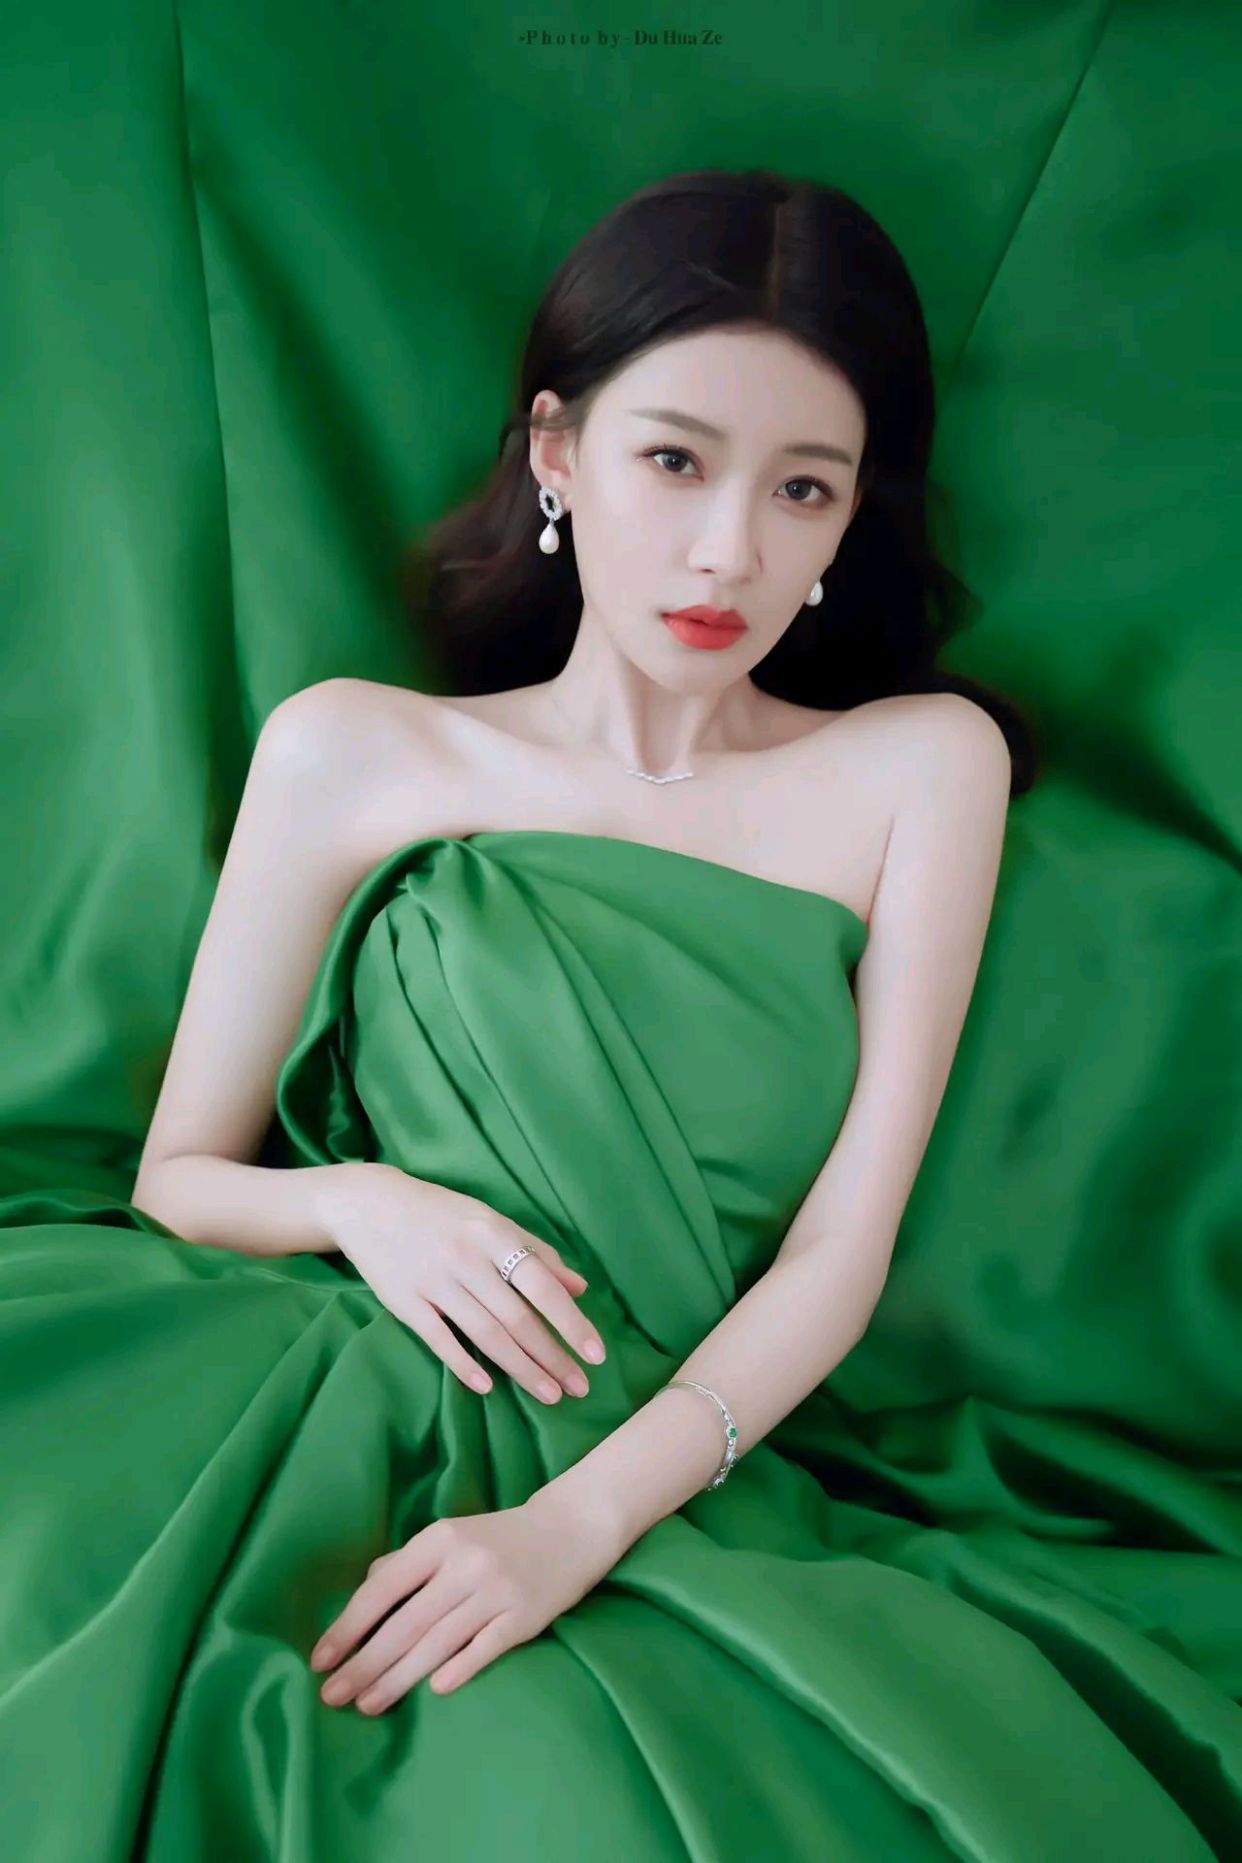 孙怡身穿一袭绿色抹胸礼裙,尽显妩媚动人的女神